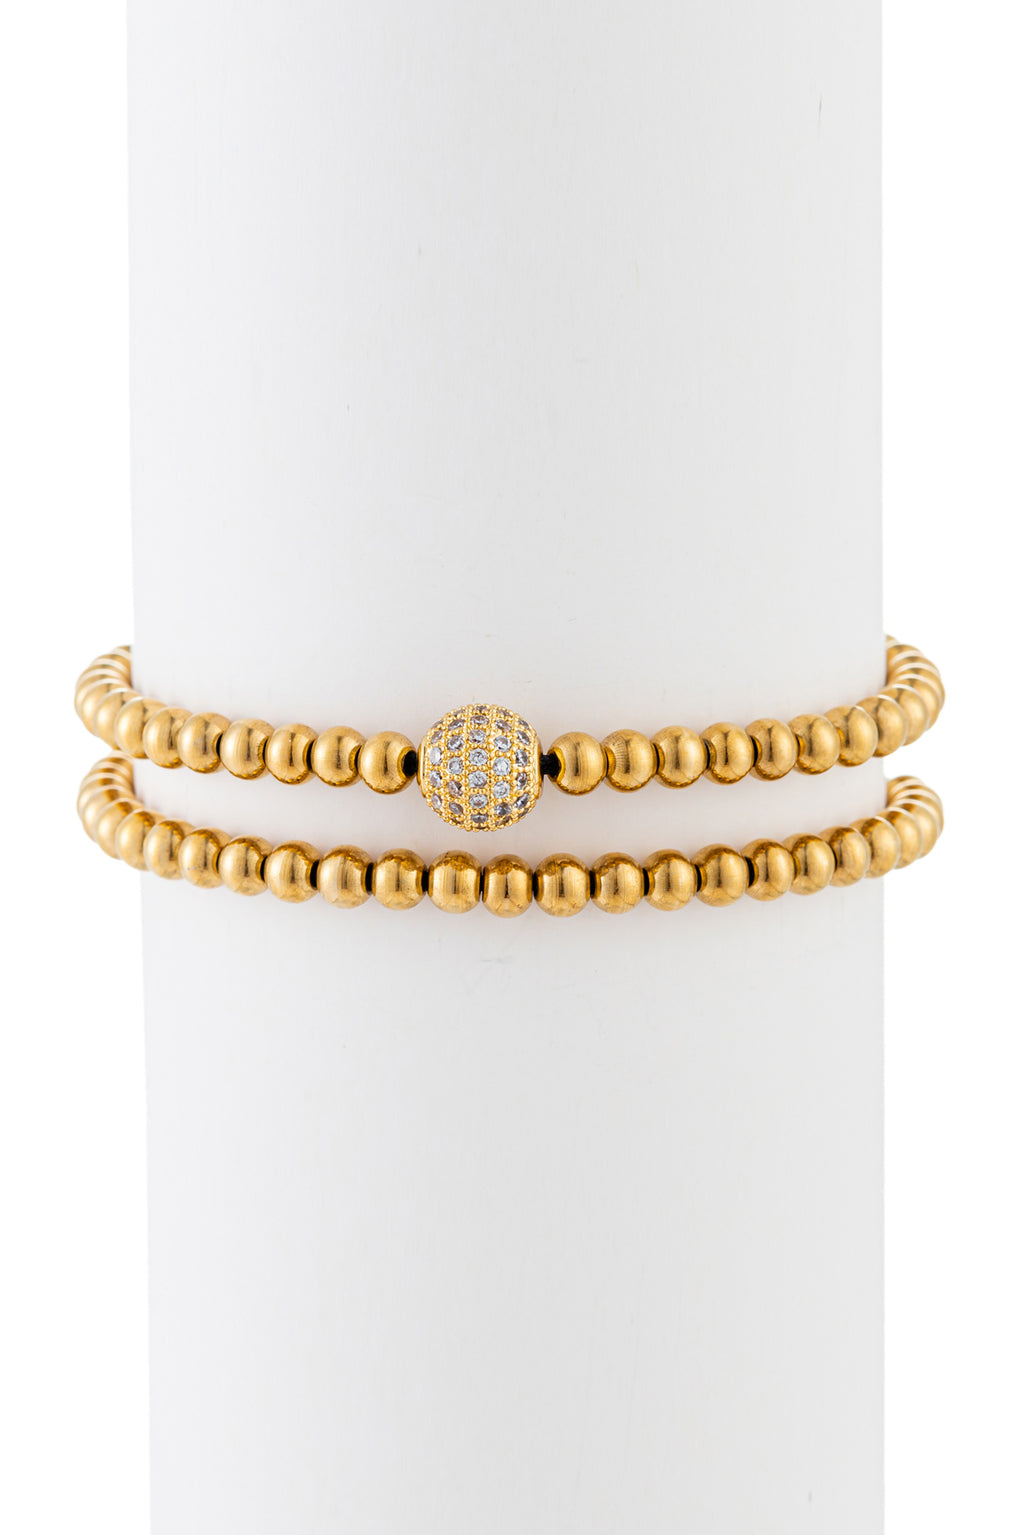 Gold titanium beaded bracelet with brass CZ charm.